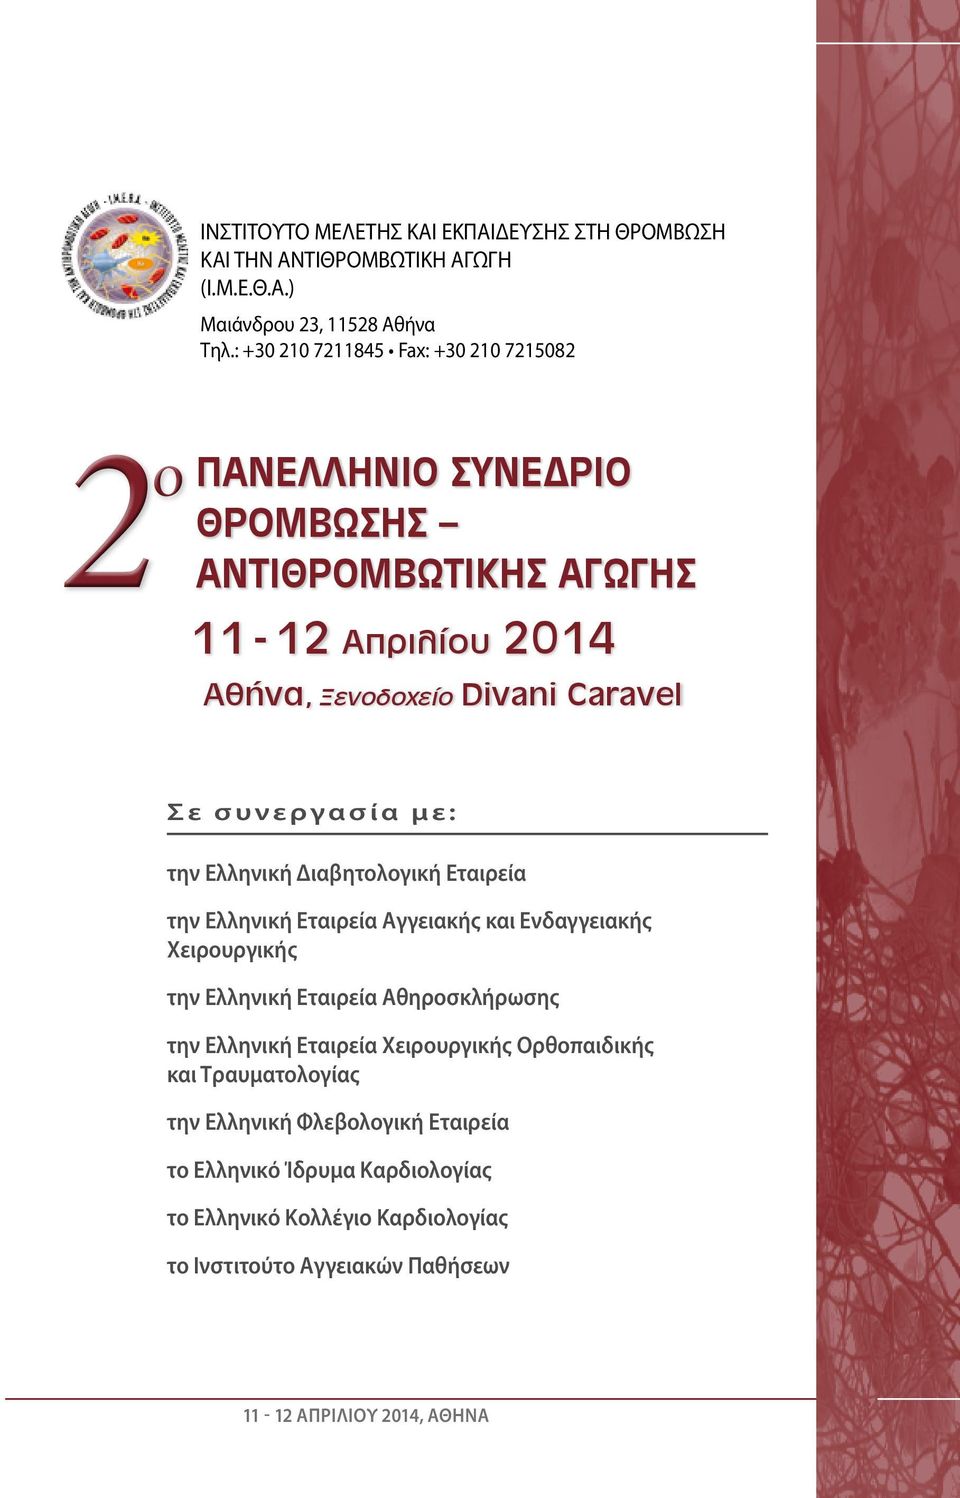 συνεργασία με: την Ελληνική Διαβητολογική Εταιρεία την Ελληνική Εταιρεία Αγγειακής και Ενδαγγειακής Χειρουργικής την Ελληνική Εταιρεία Αθηροσκλήρωσης την